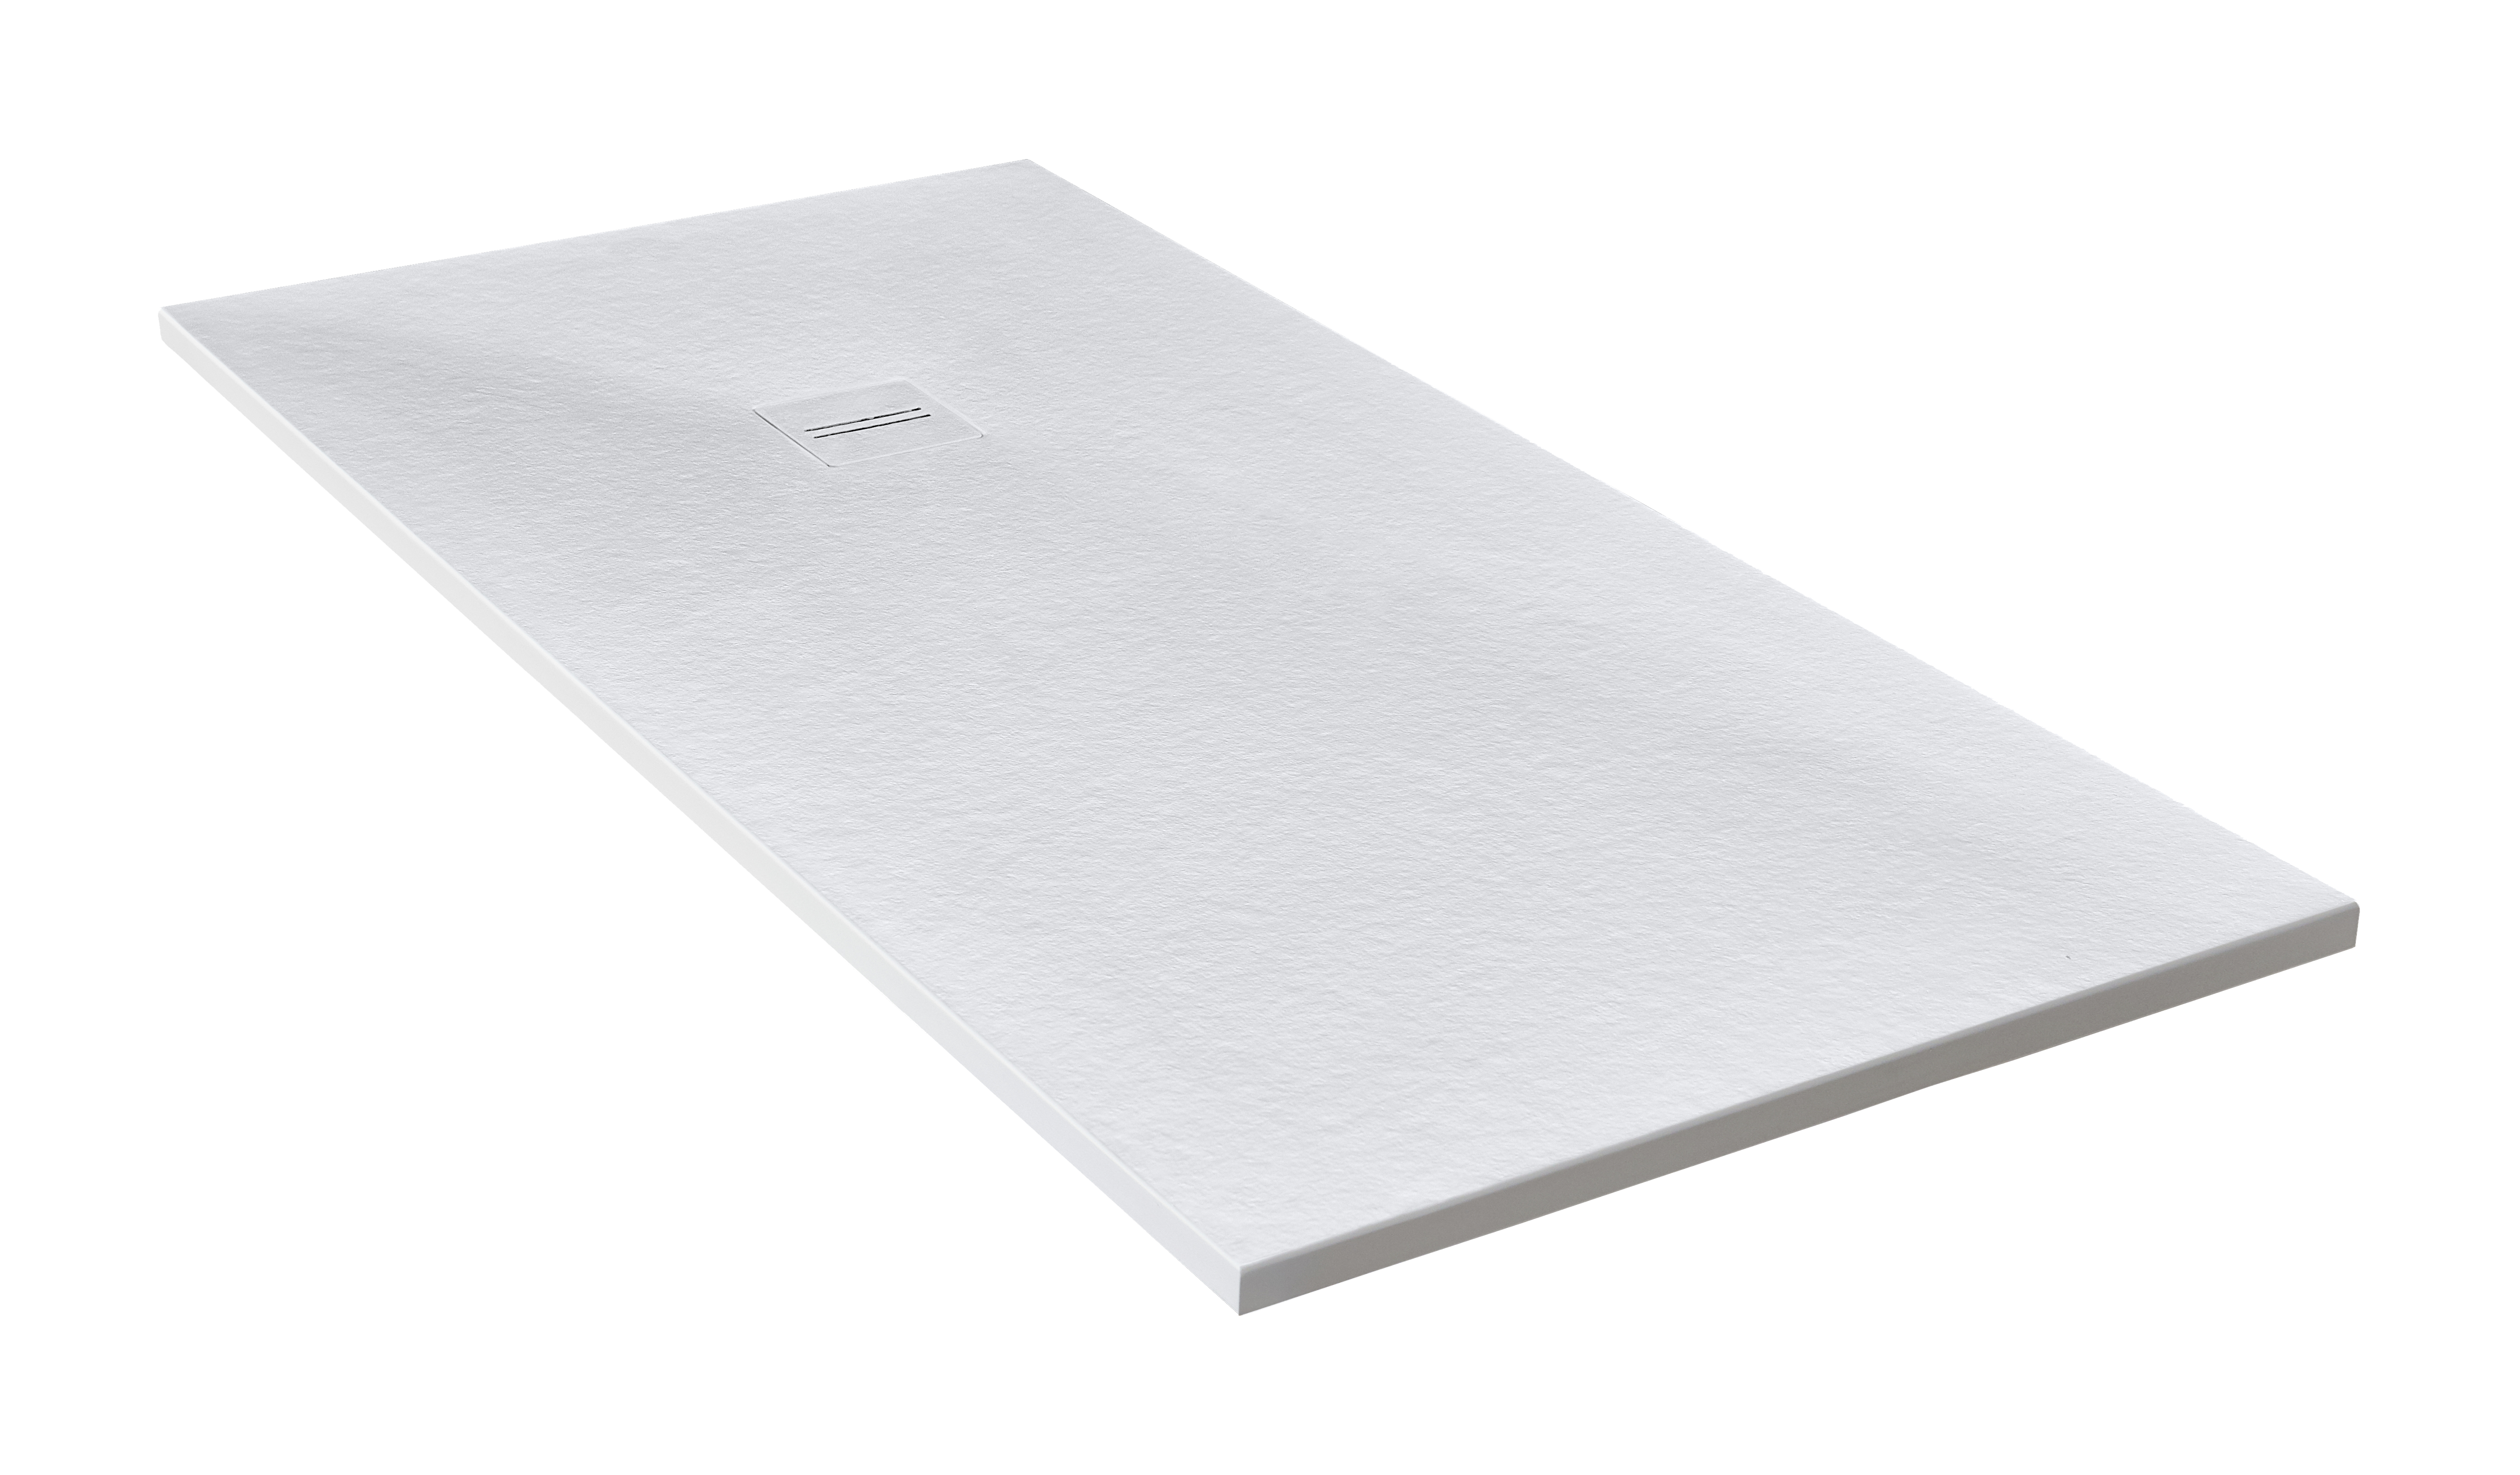 Plato de ducha cosmos 210x75 cm blanco